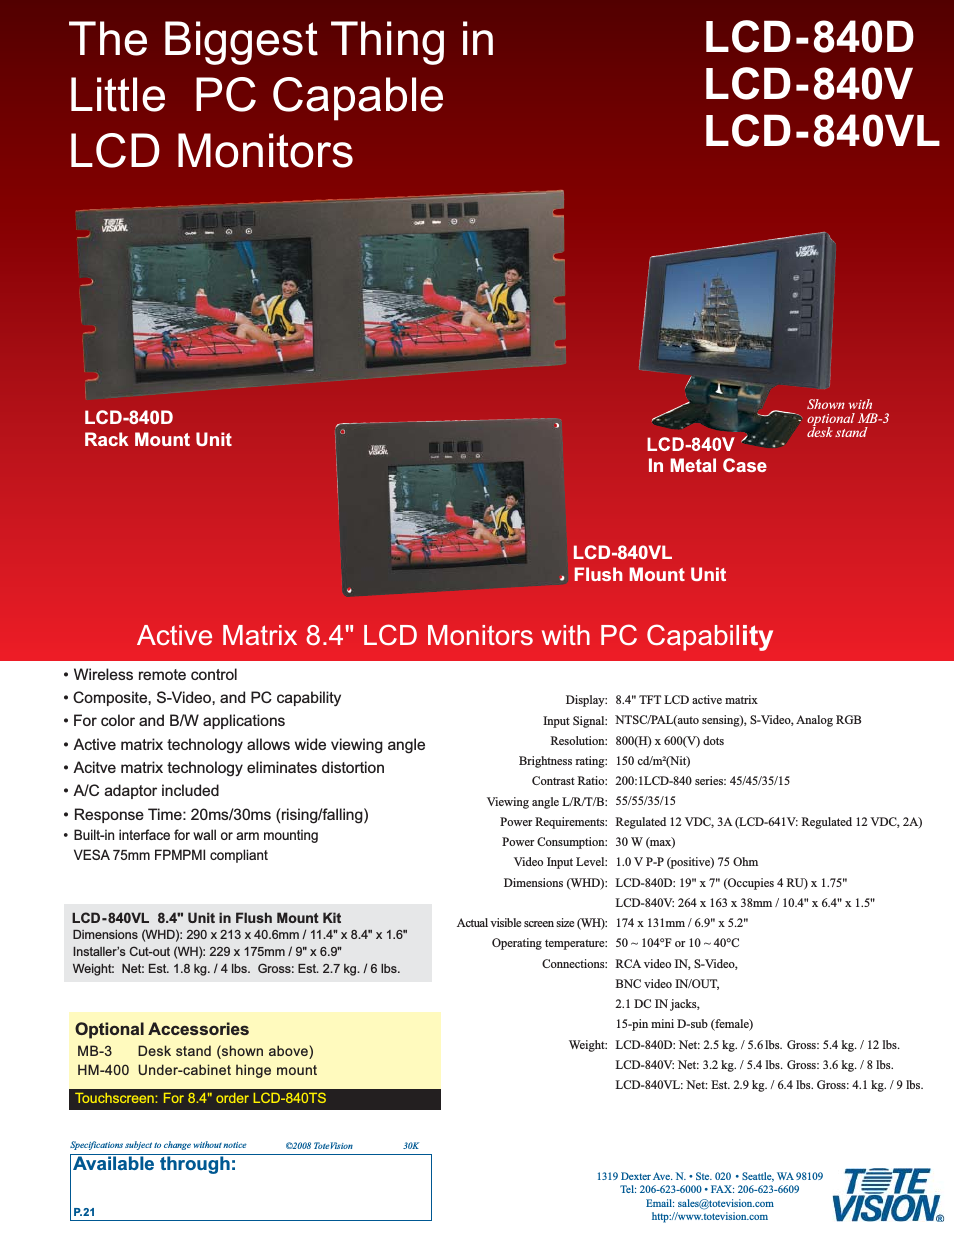 LCD-840VL